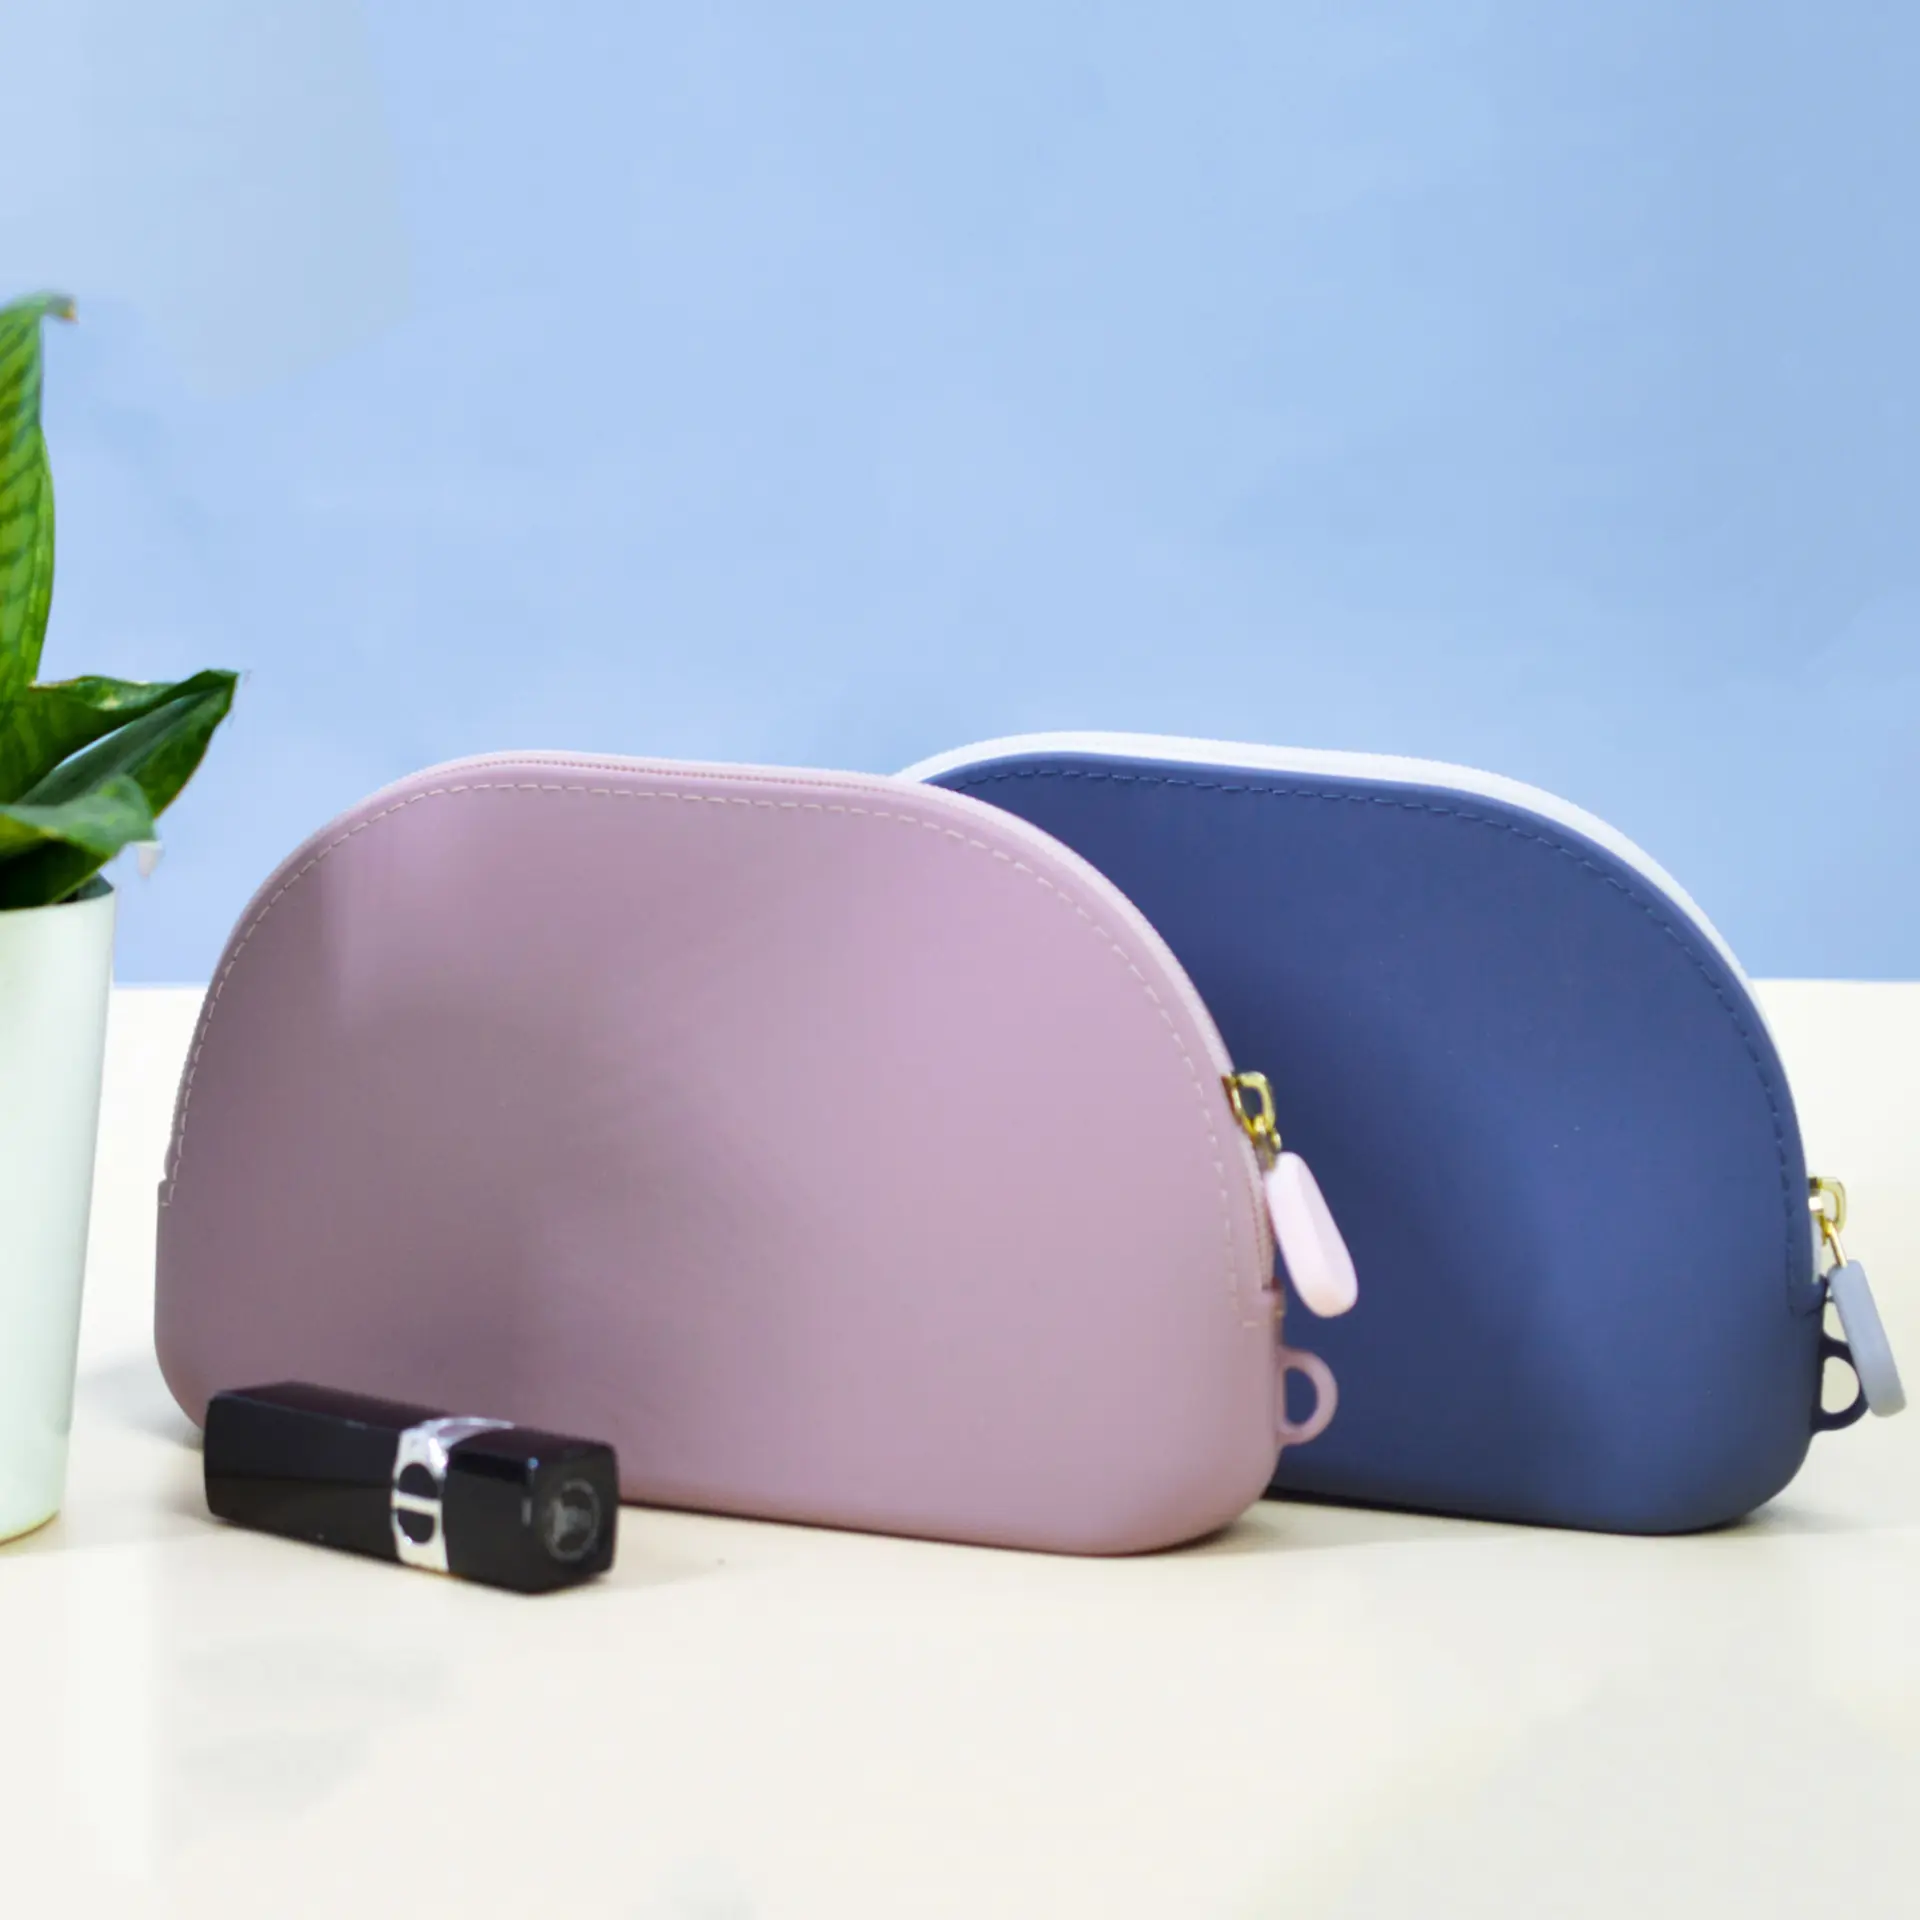 Sacchetto per donne in Silicone per Organizer cosmetico borsa da donna borsa portatile in Silicone per donna borsa cosmetica semicircolare